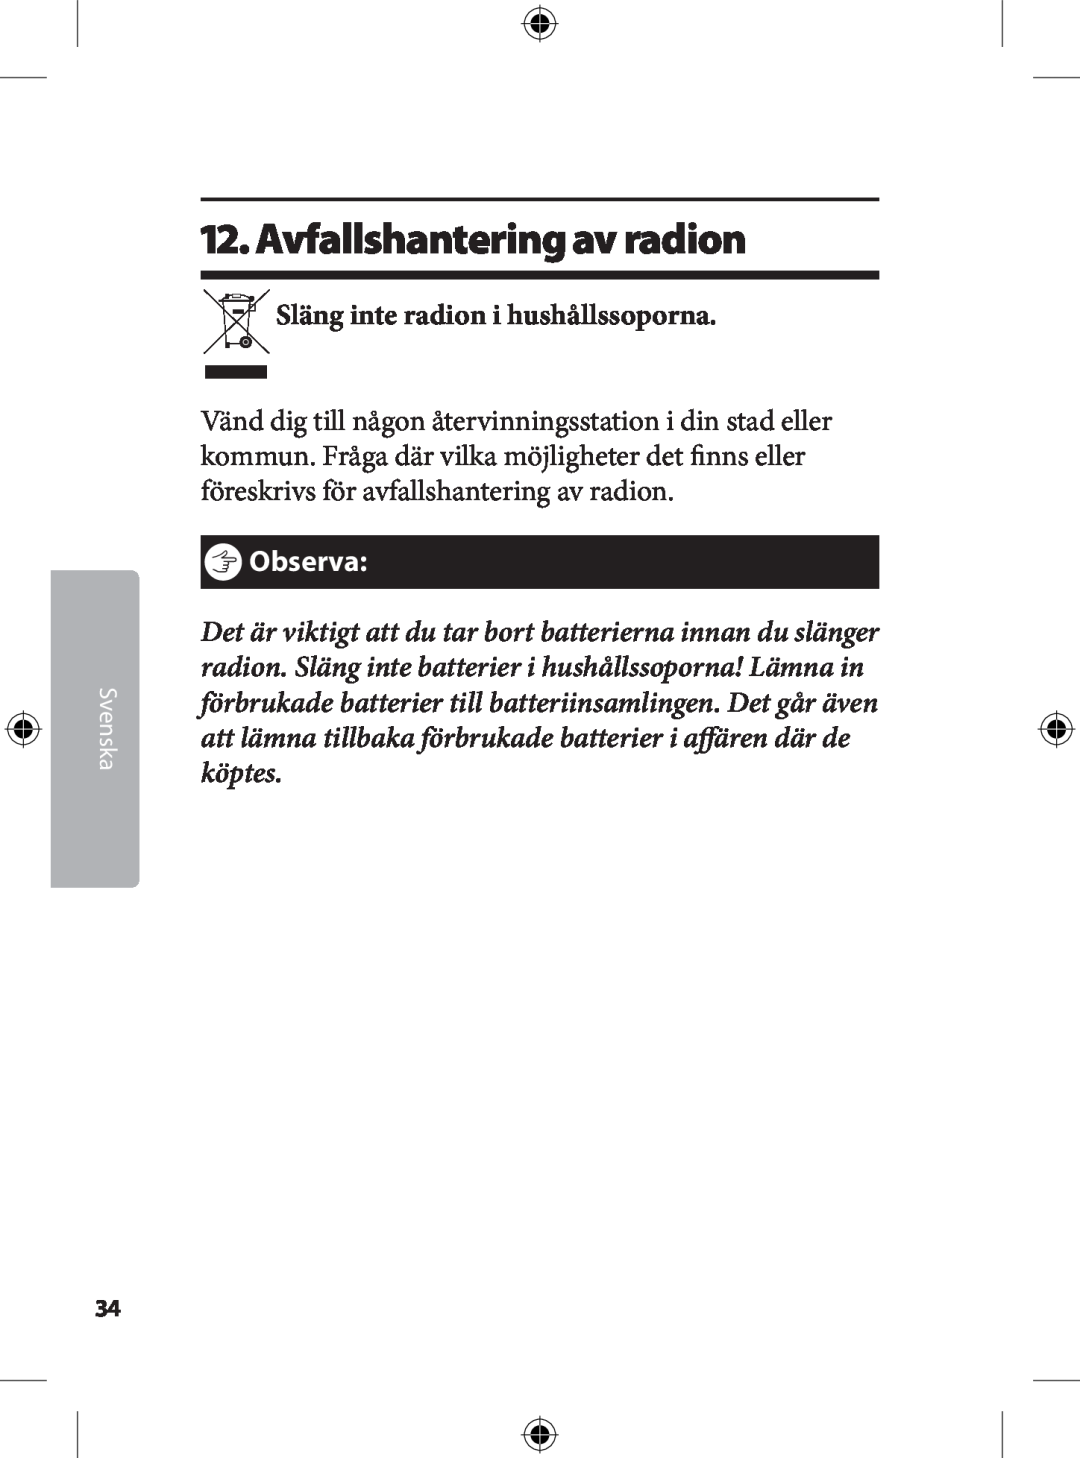 Kompernass KH 2246 manual . Avfallshantering av radion, Släng inte radion i hushållssoporna, ôObserva 